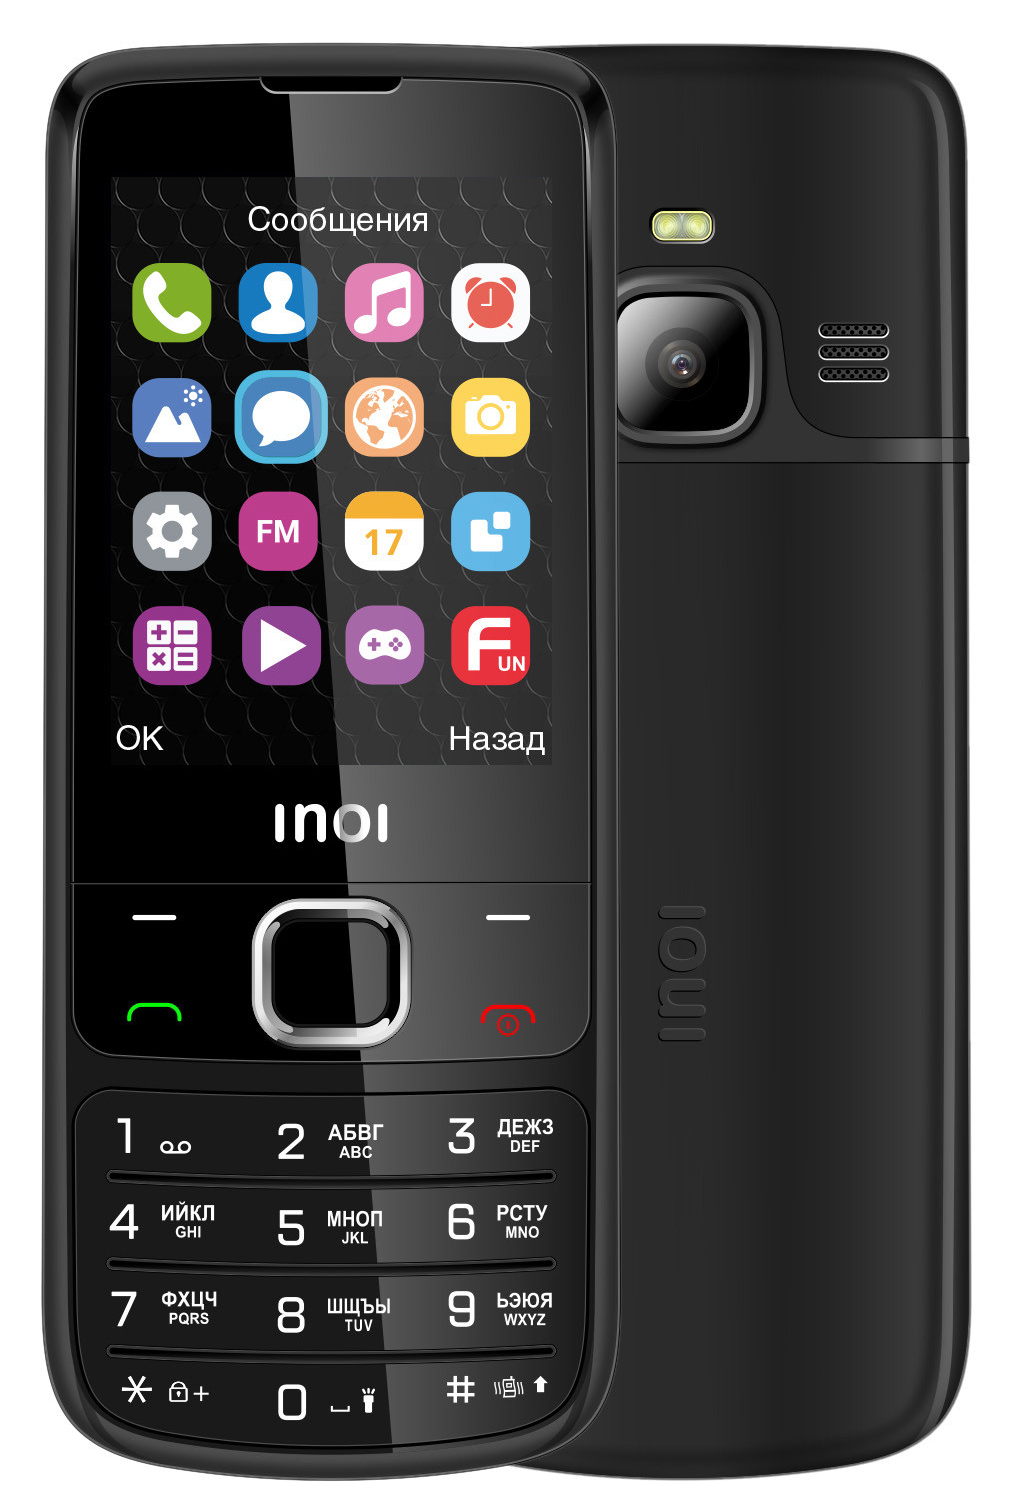 Мобильный телефон INOI 243 BLACK цена и фото